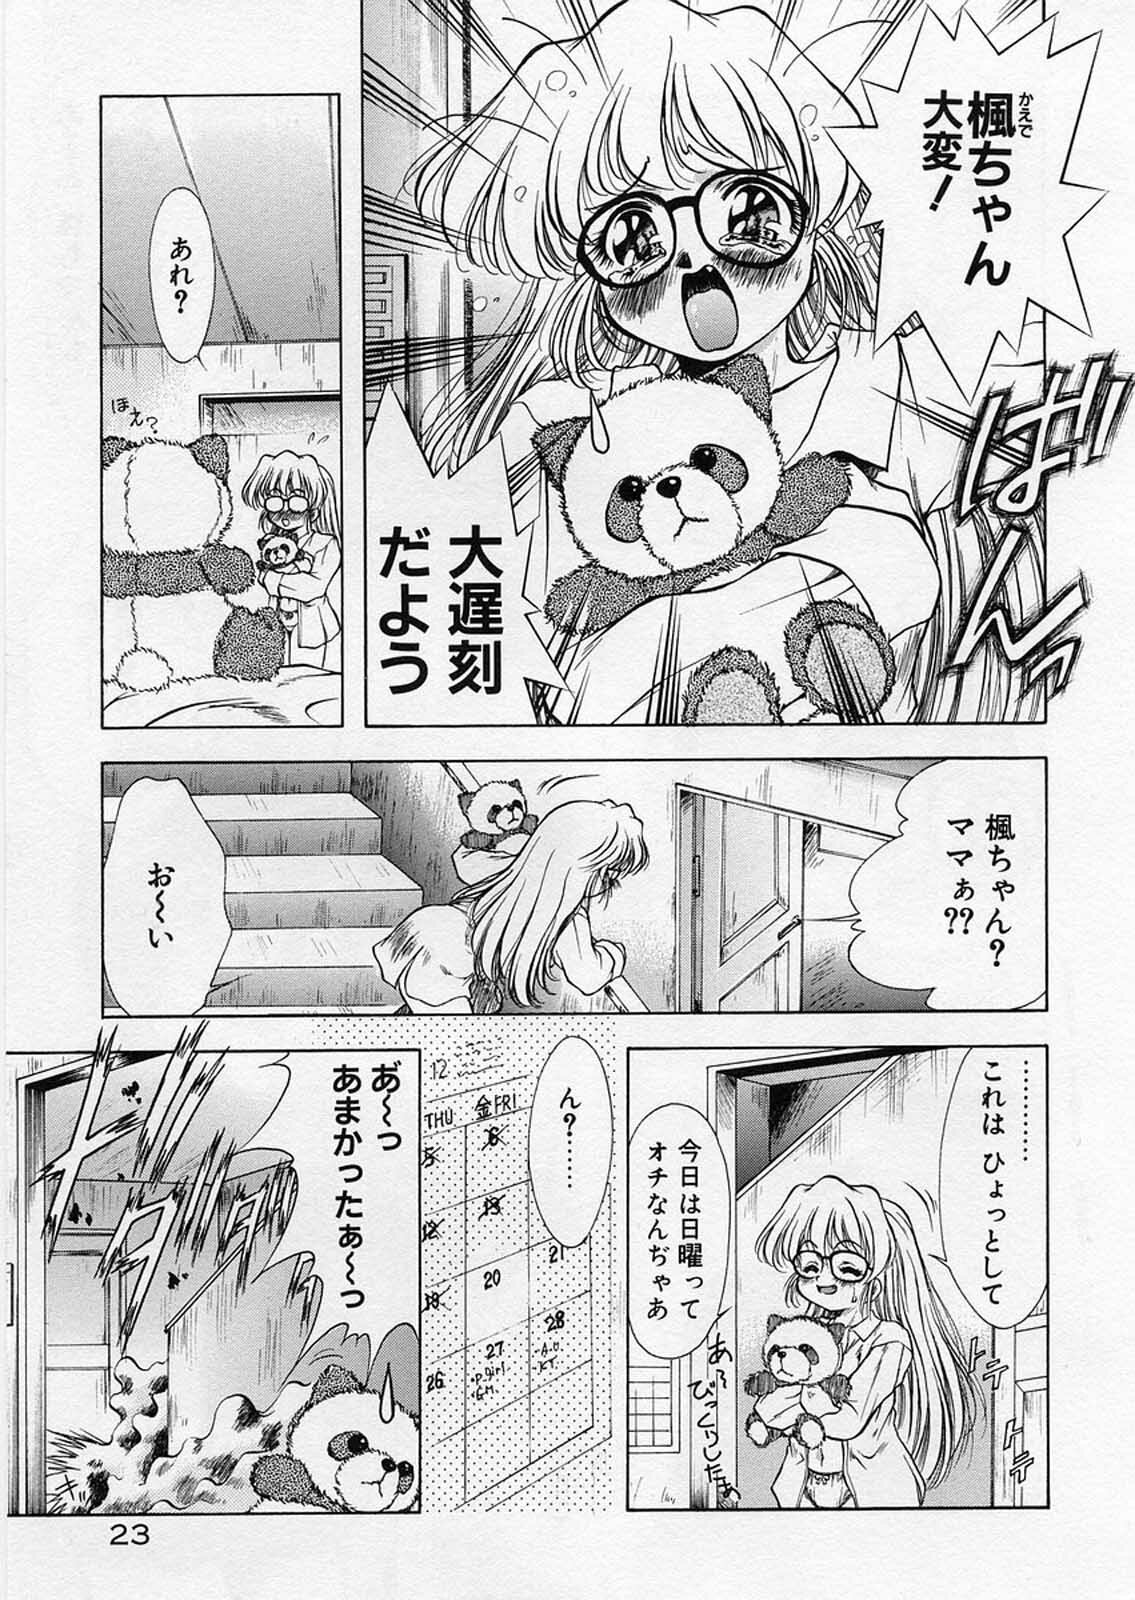 [Kirikaze] Anzu ~Kioku no Hakuhen~ page 27 full